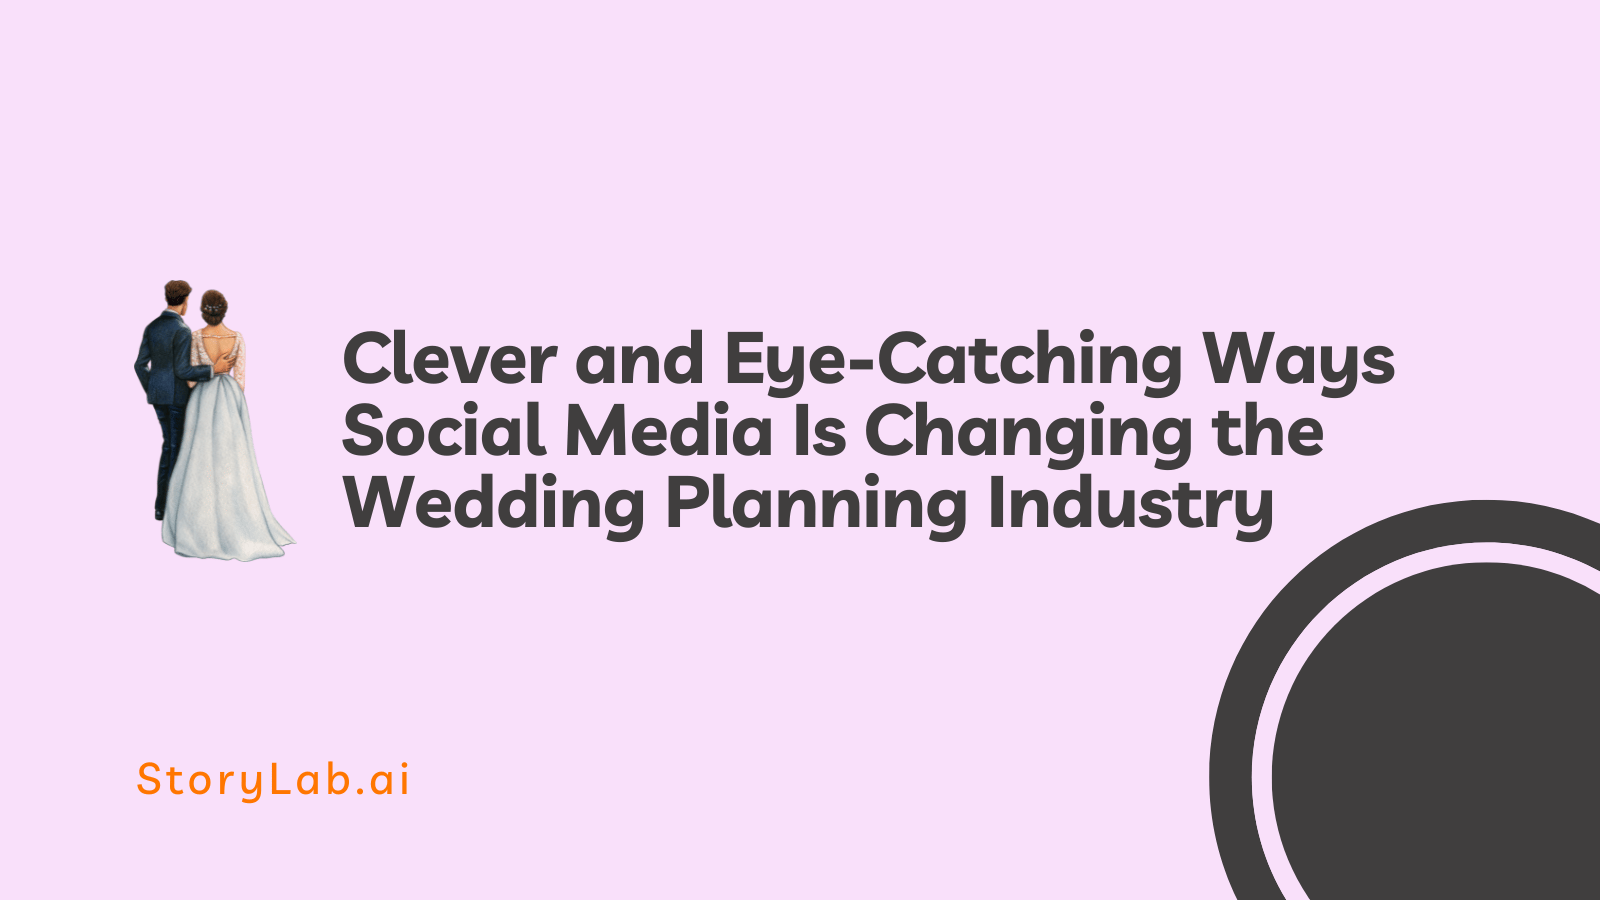 Des façons intelligentes et accrocheuses que les médias sociaux changent le secteur de l'organisation de mariages